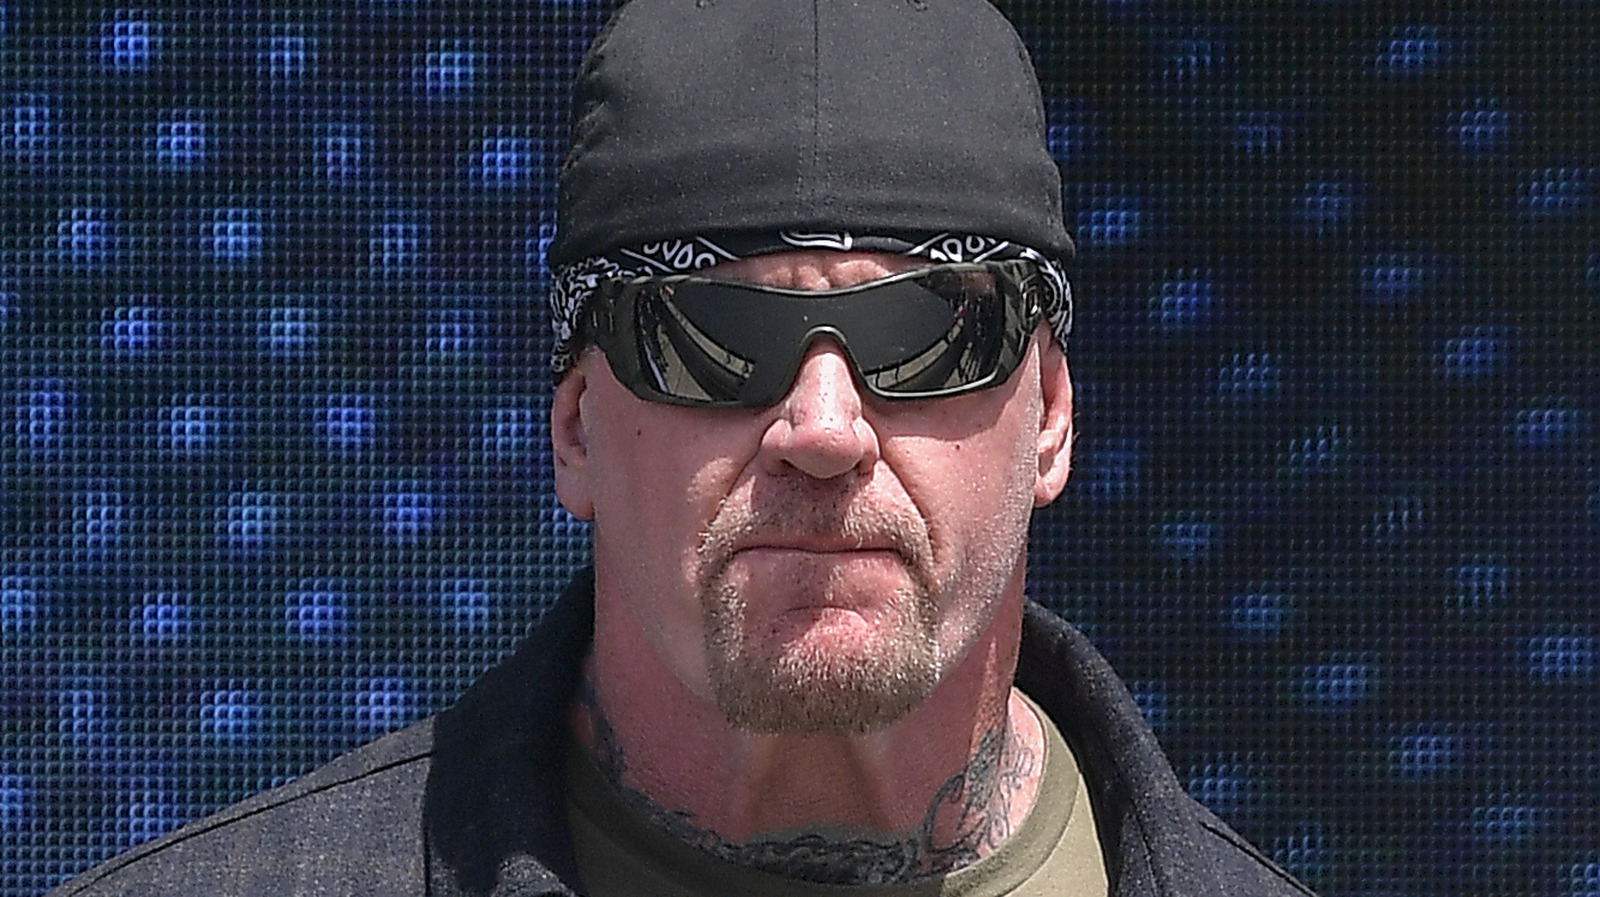 La nueva sede de la WWE incluye exhibición temática de Undertaker, cinturones colgantes